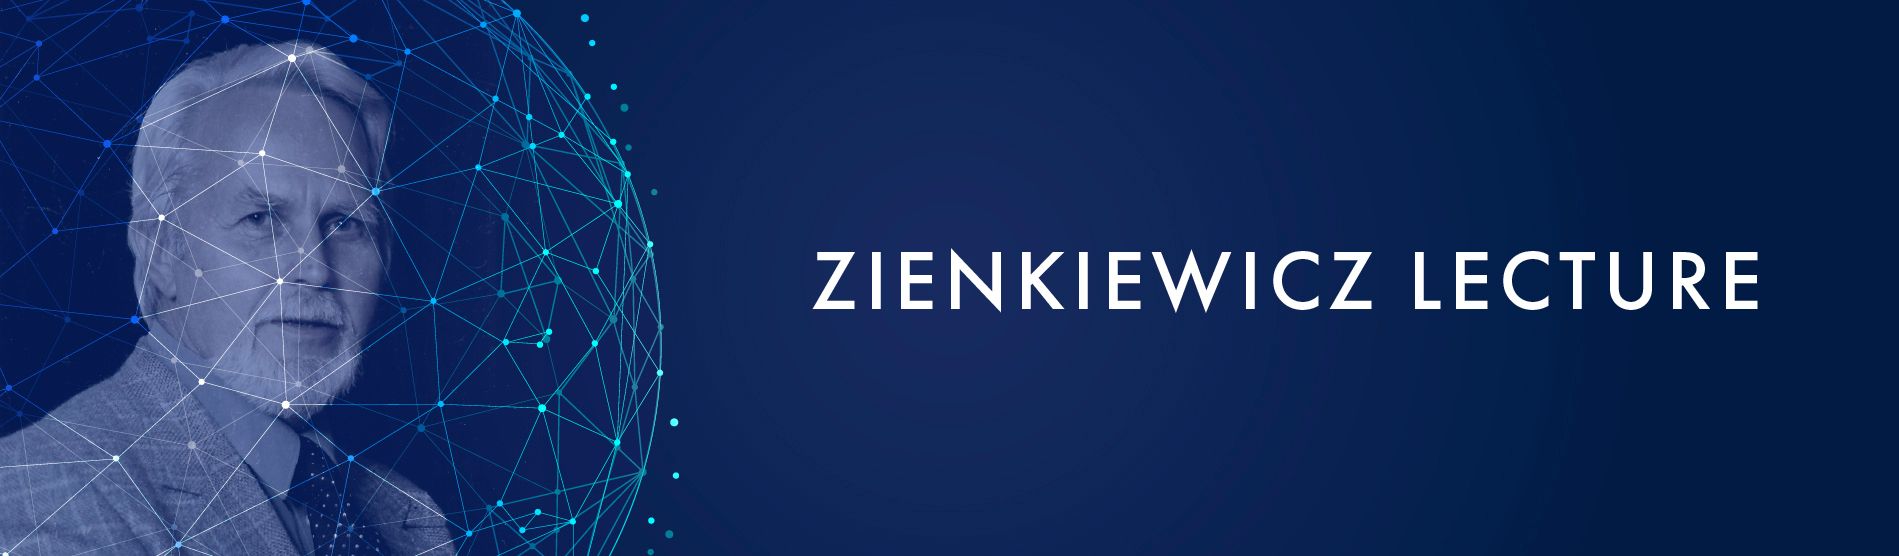 Zienkiewicz Lecture